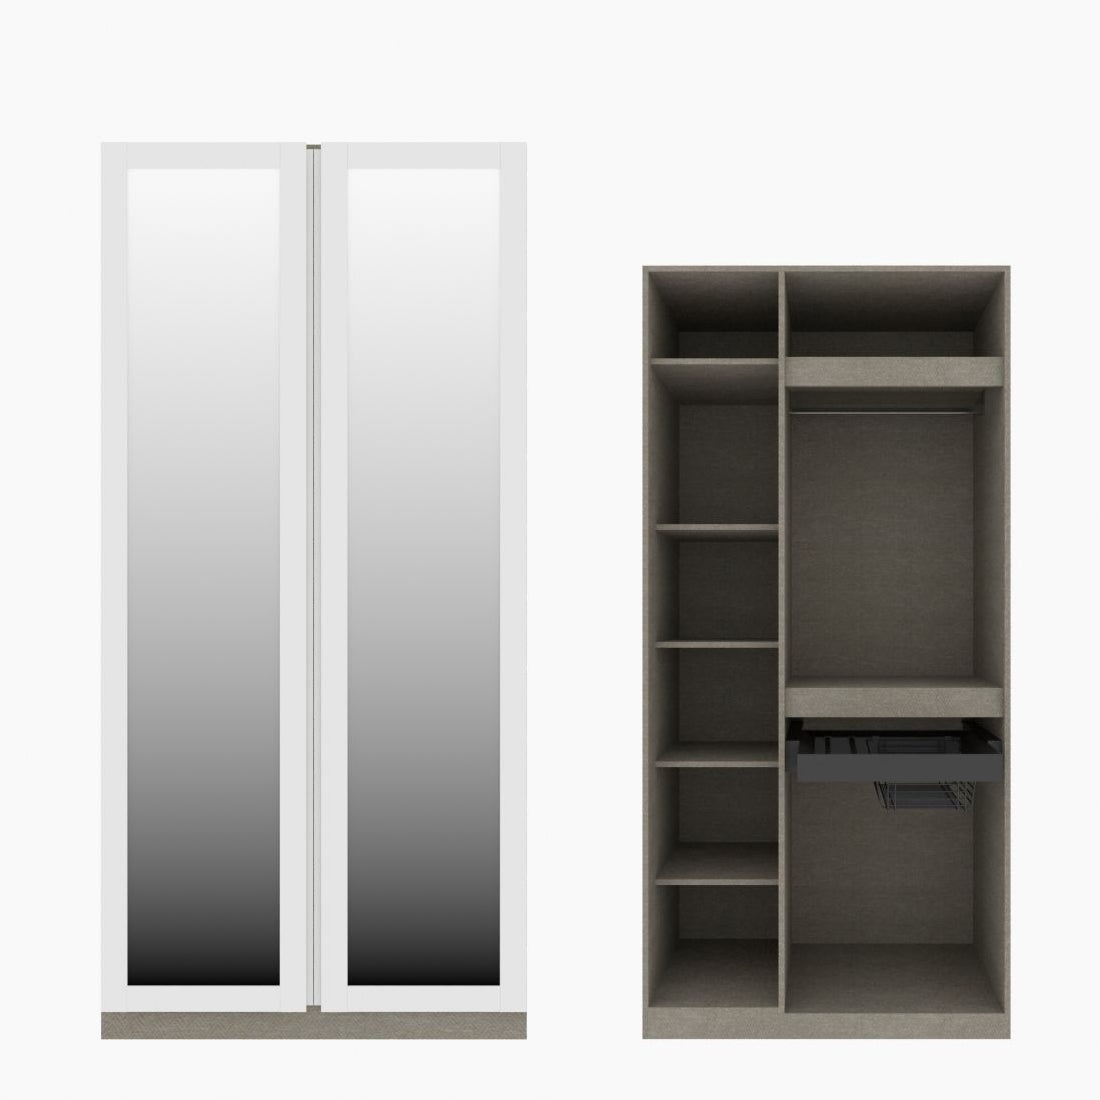 ตู้เสื้อผ้า รวมฟังก์ชั่นยอดฮิต OP-K03(ราวแขวน&ตะกร้า) ขนาด 100 ซม. รุ่น Blox สีขาว&กระจกเงา01